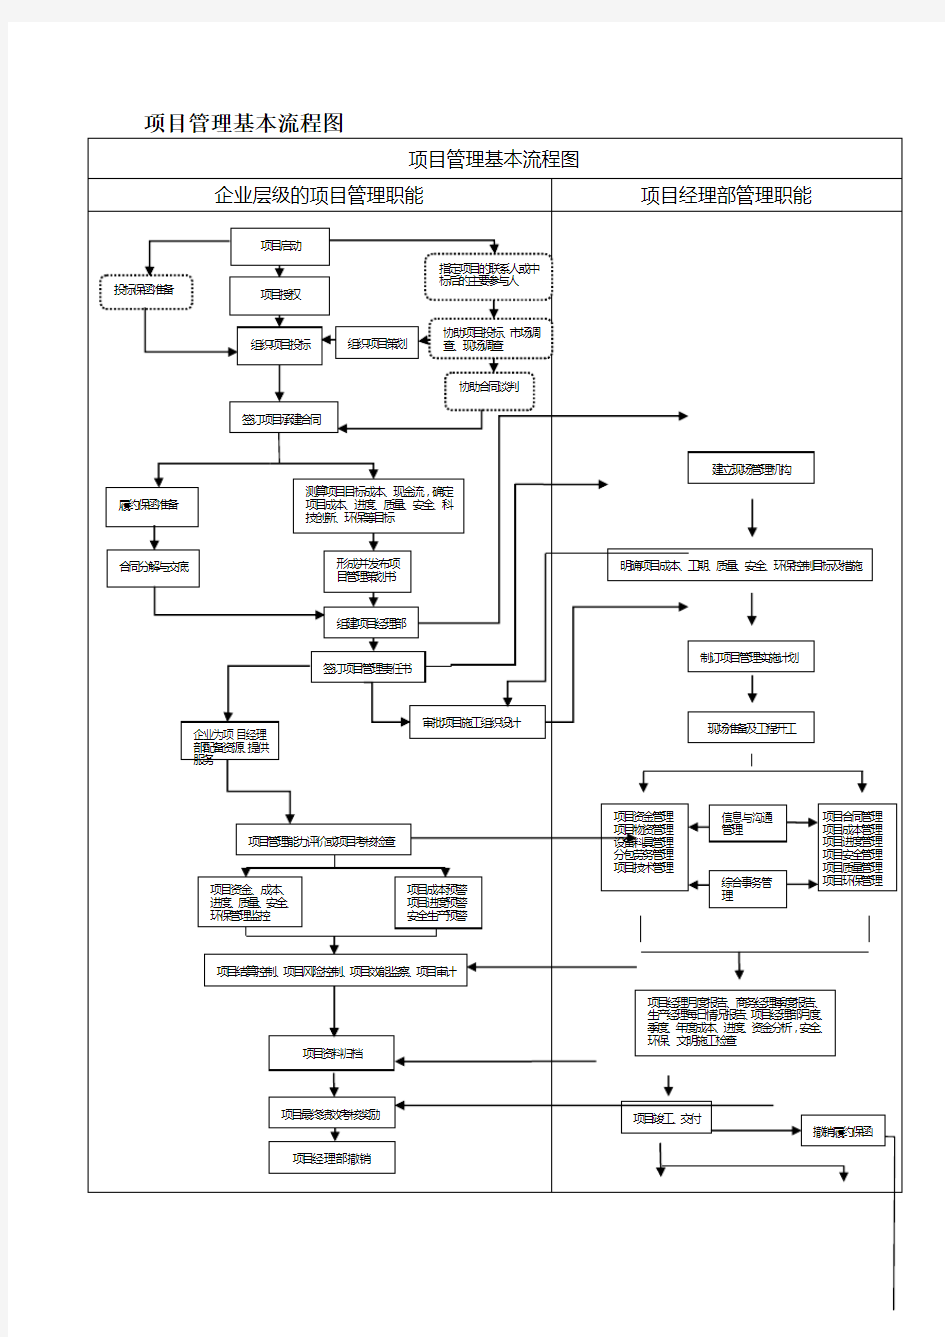 项目管理基本流程图